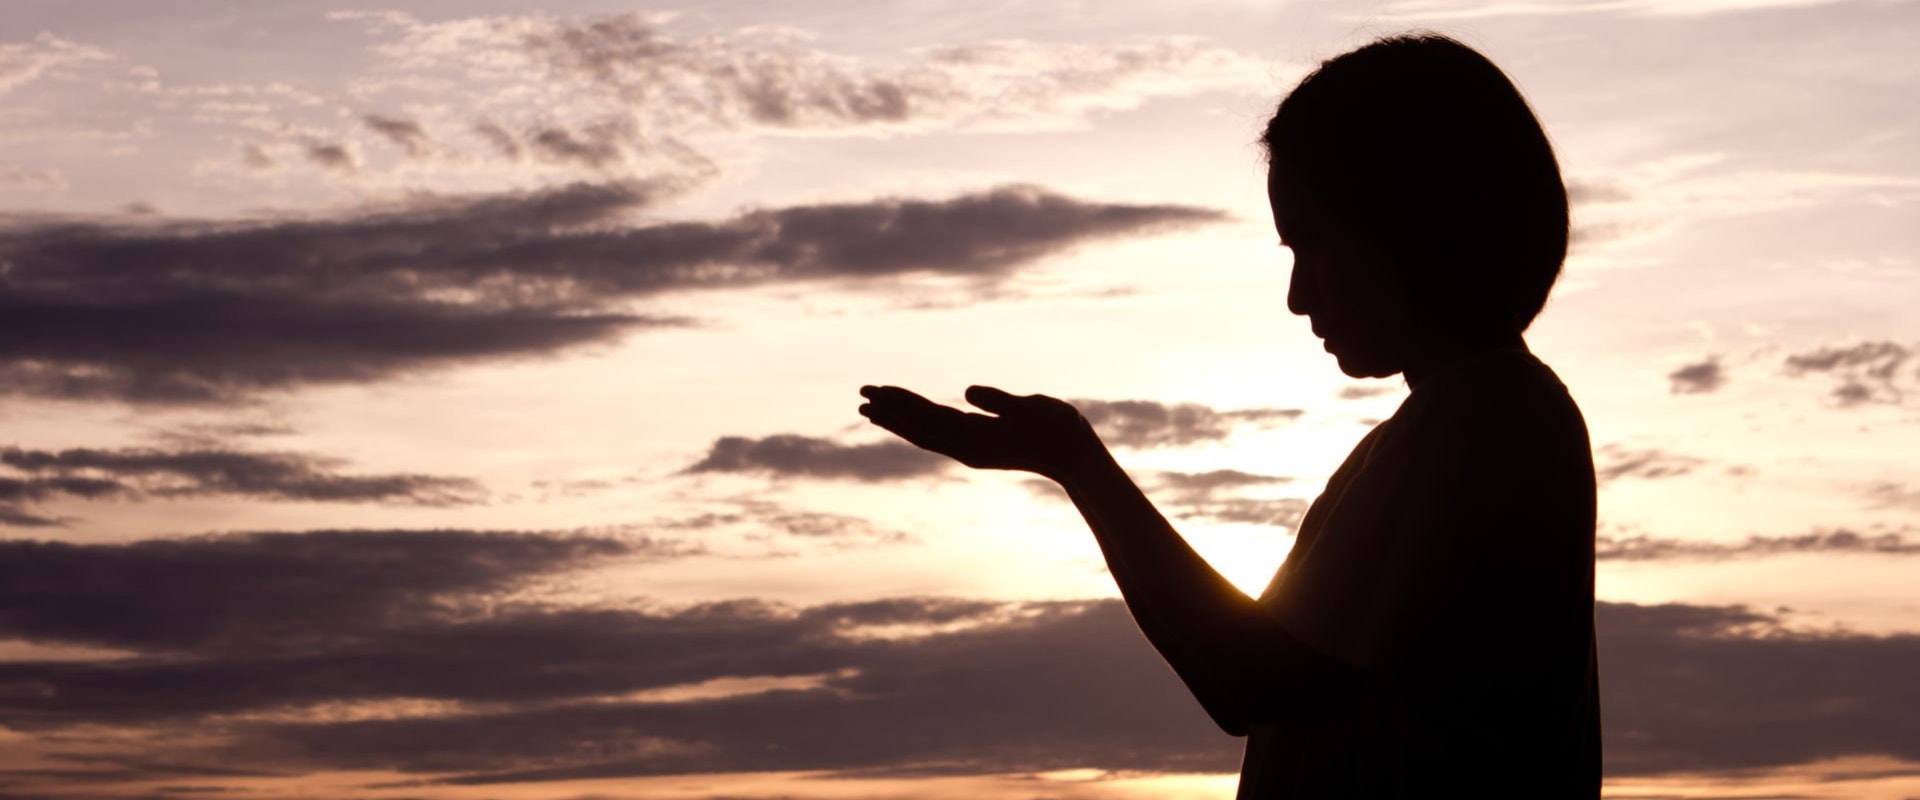 Can stress affect spiritual wellness?